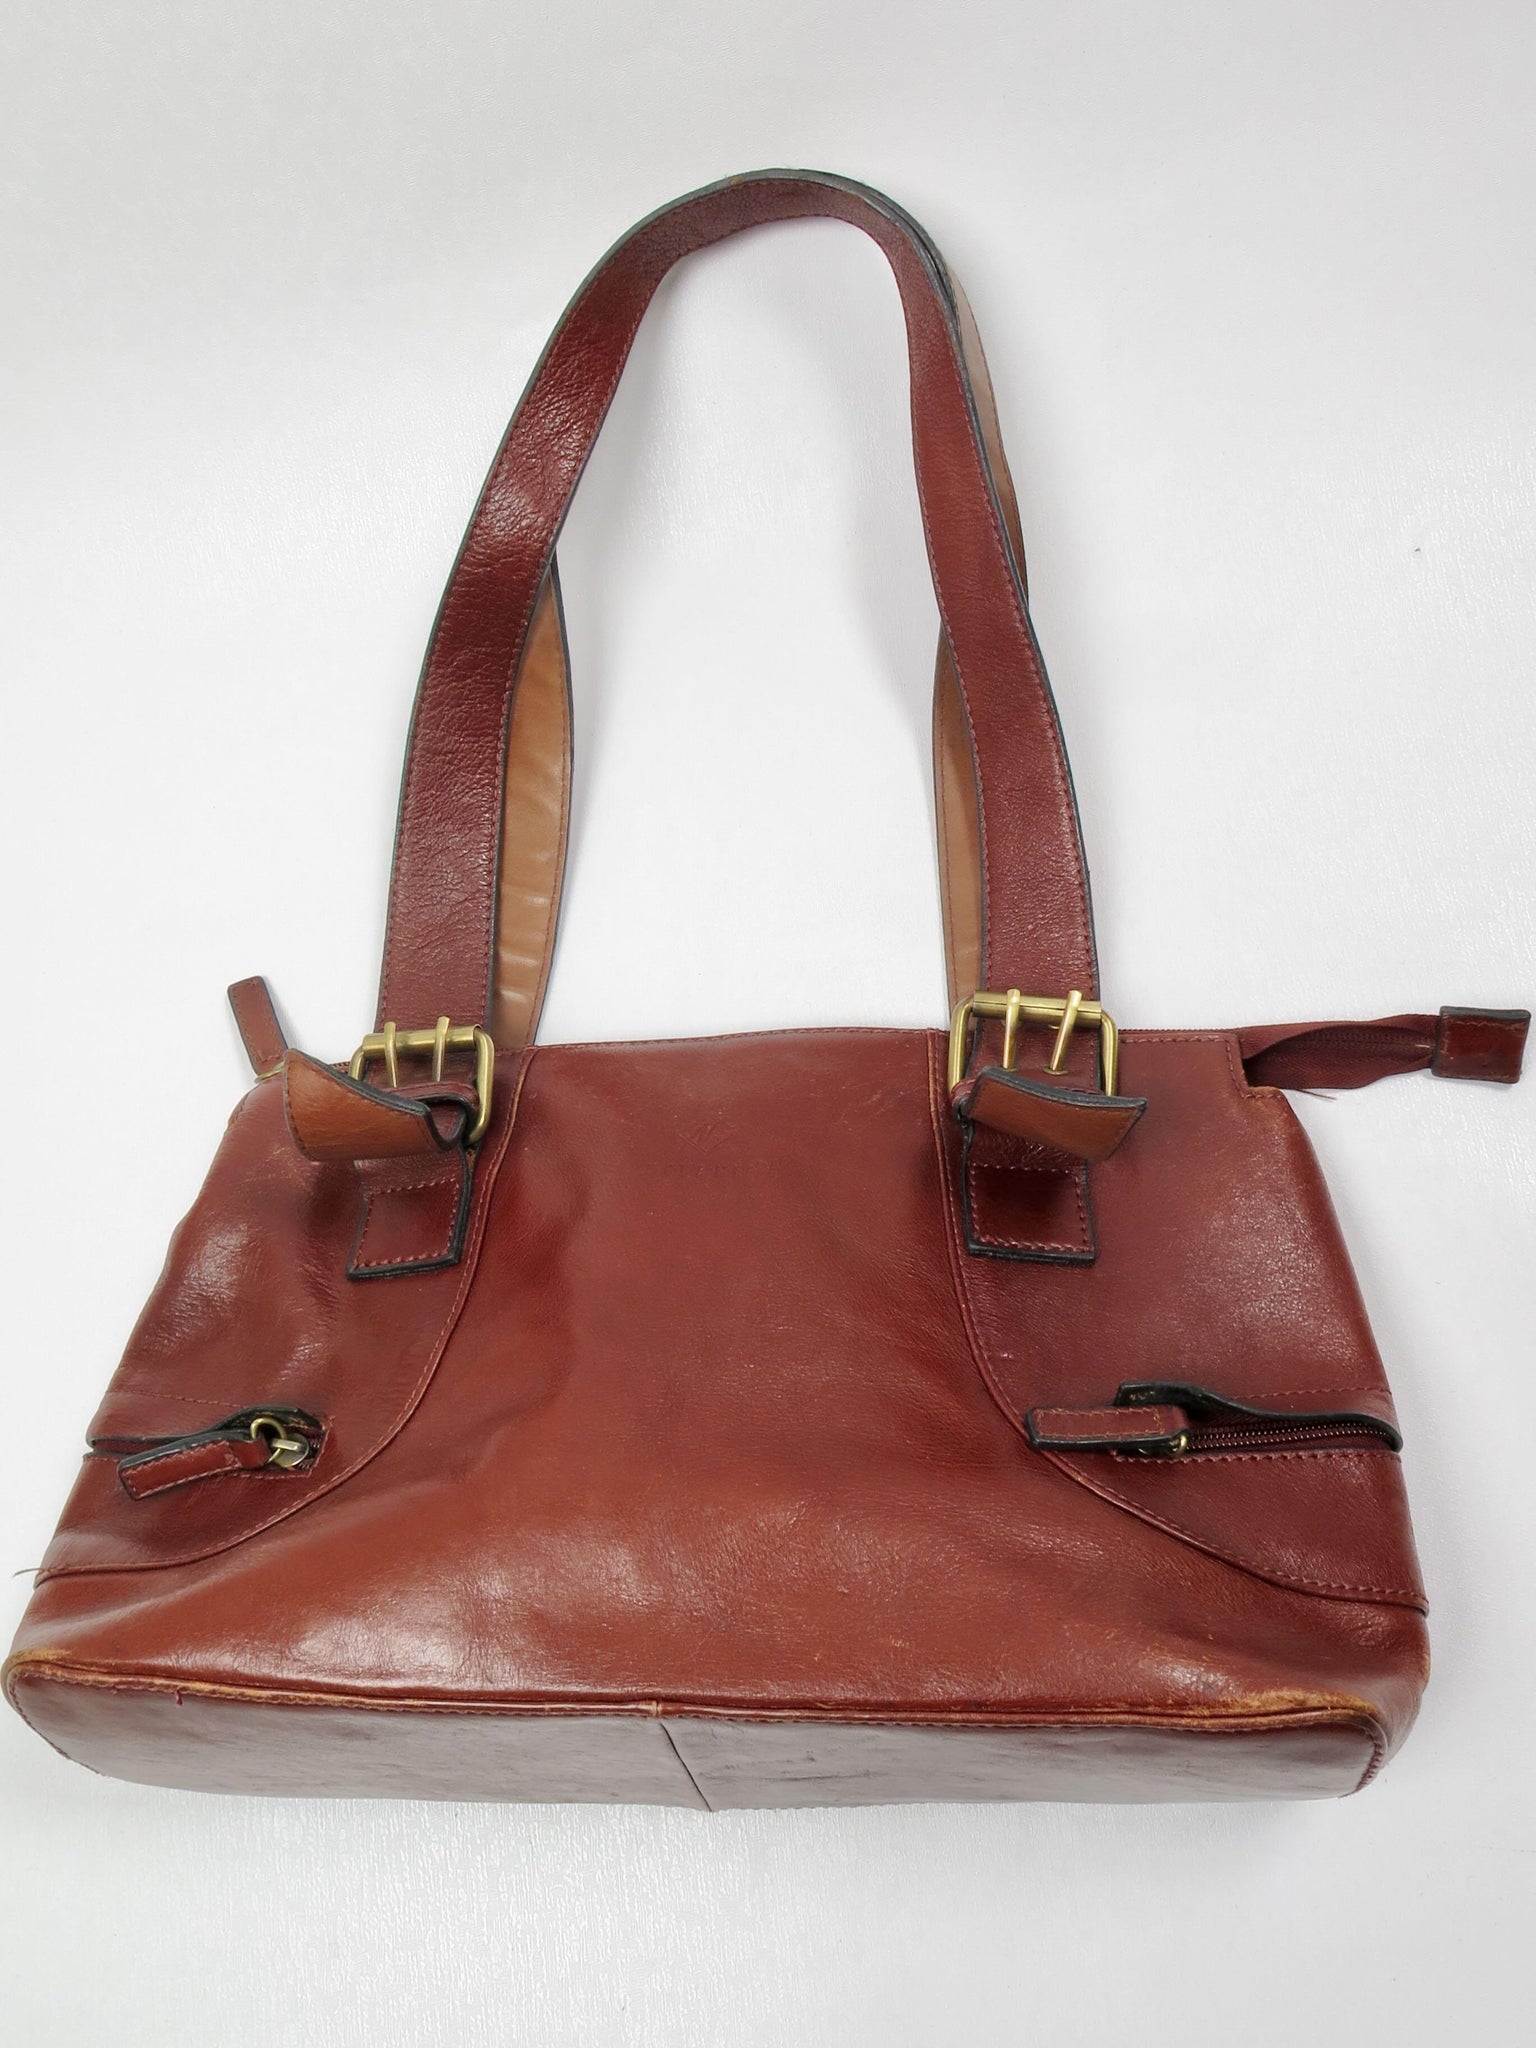 Brown Leather Vintage Bag - The Harlequin